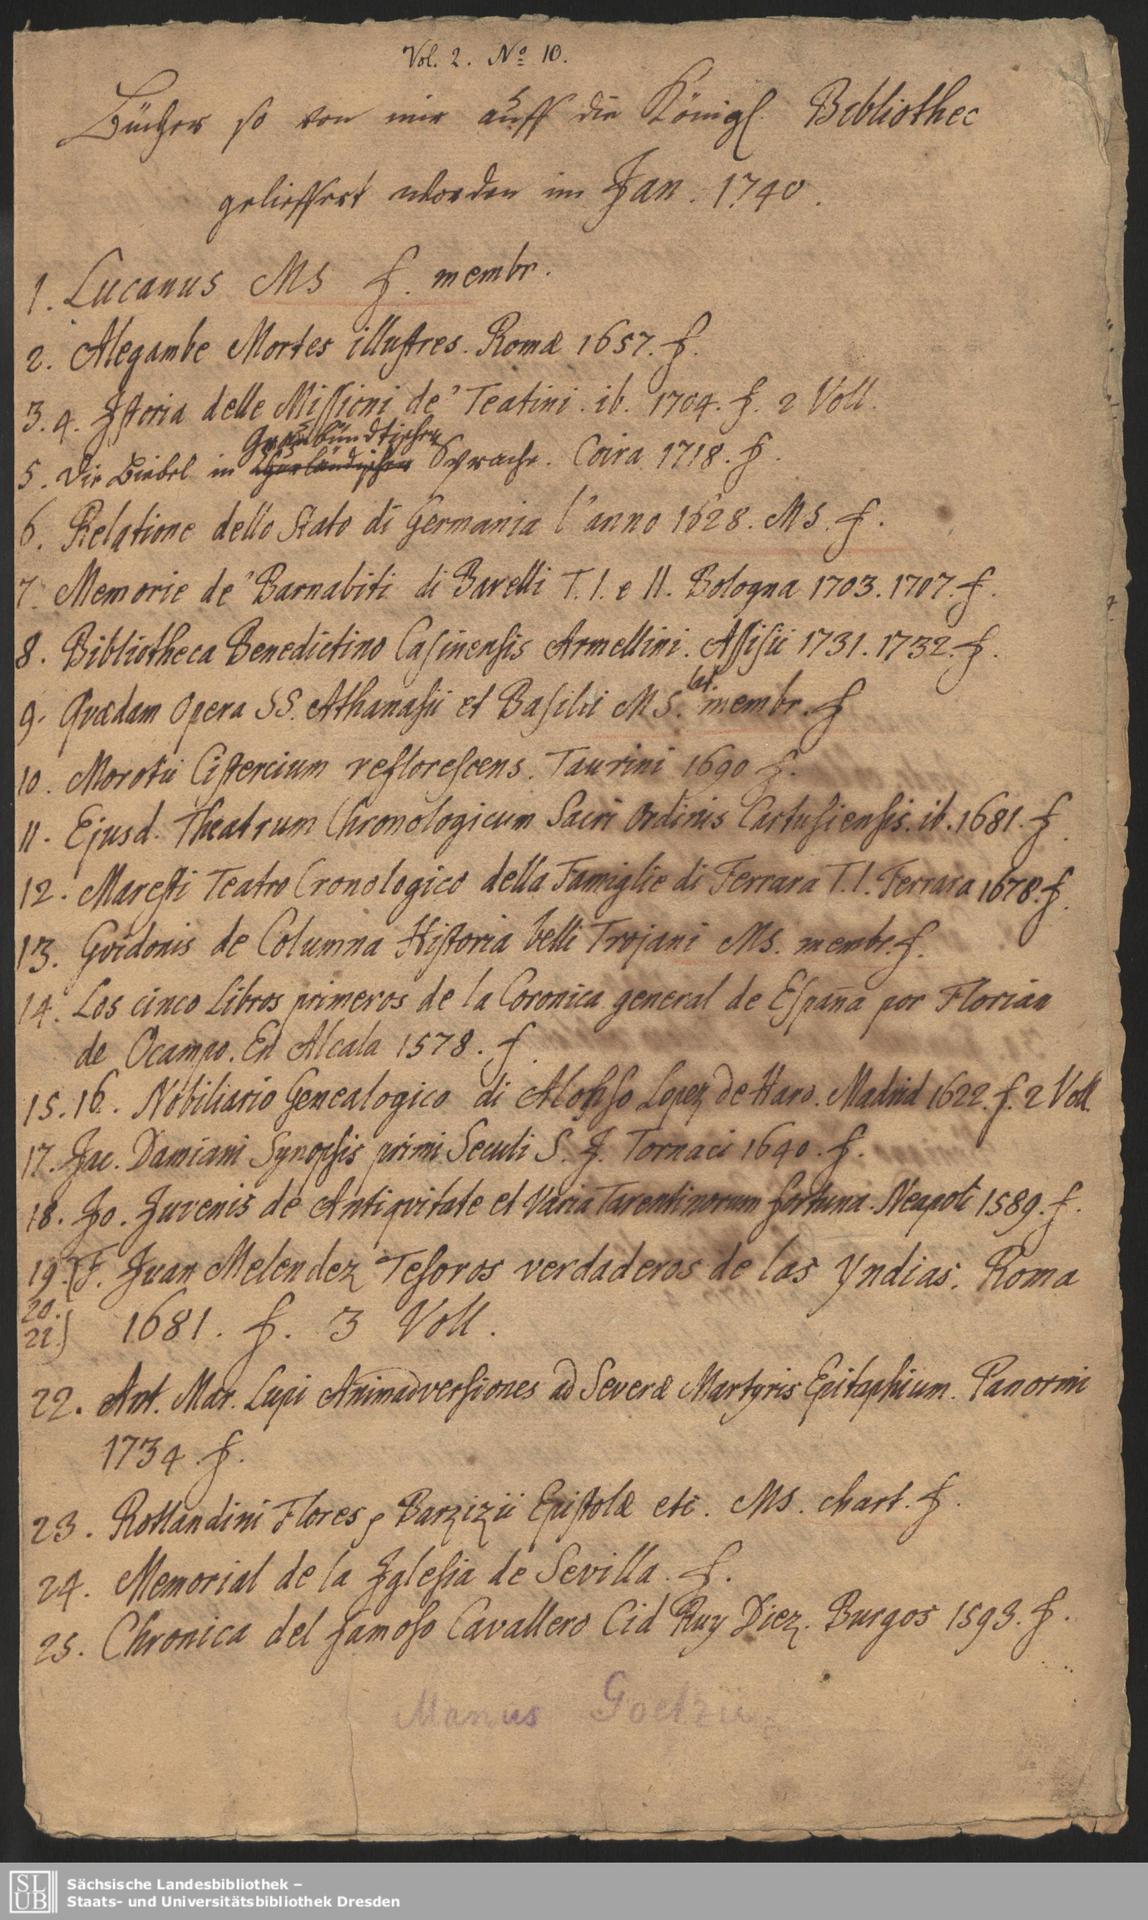 Johann Christian Götze, Bücher, so von mir auf die K. Bibliothec gelieffert worden im Jan. 1740